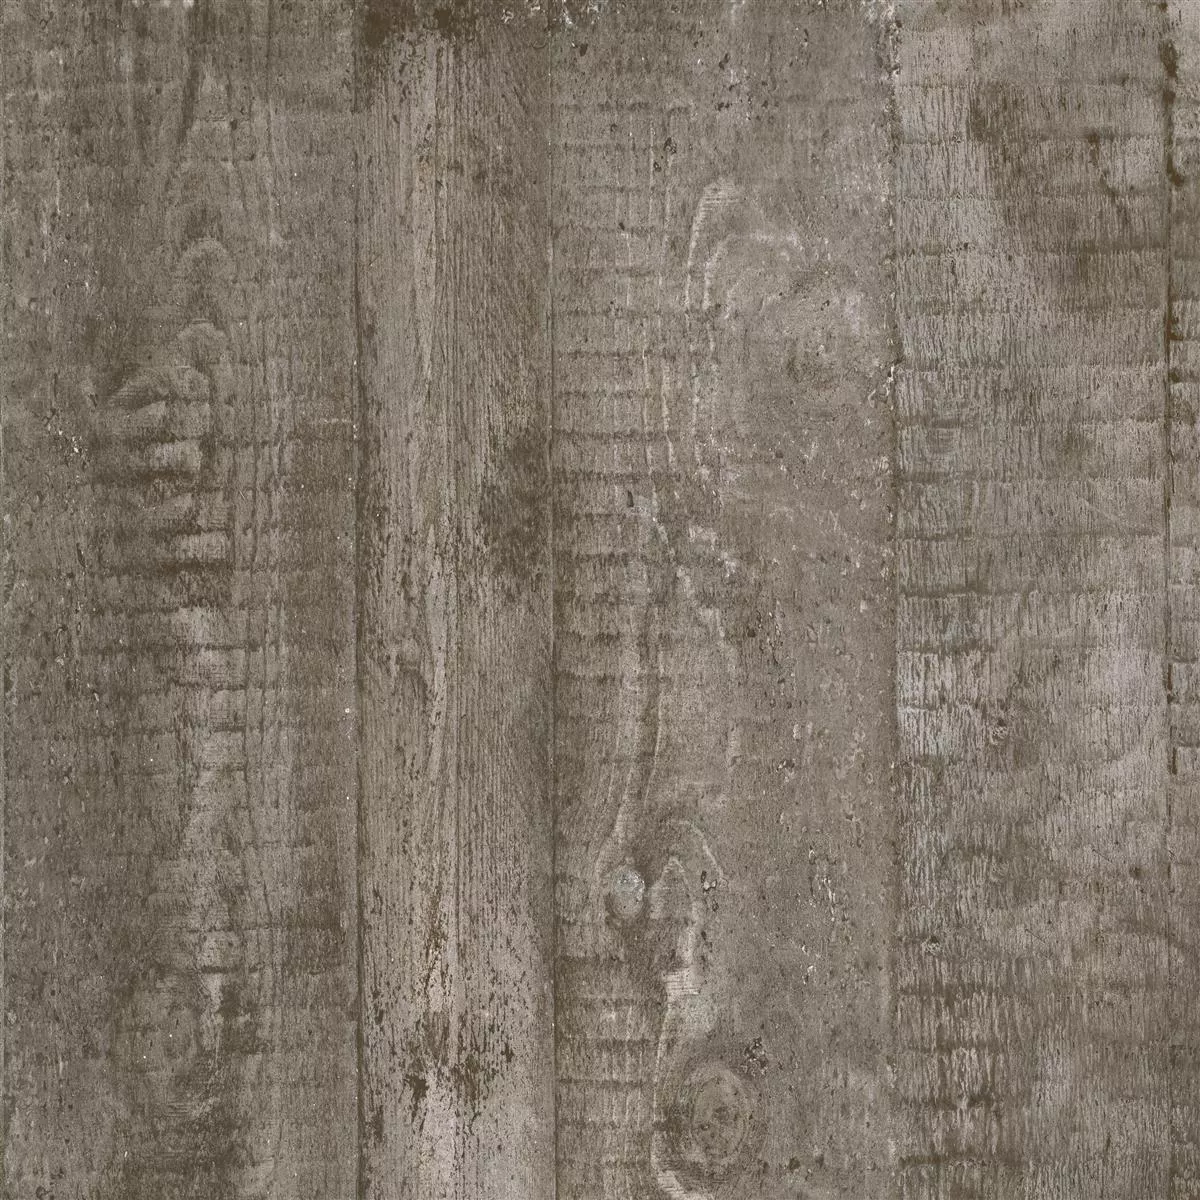 Vzorek Podlahové Dlaždice Gorki Dřevěný Vzhled 60x60cm Glazovaný Hnědá